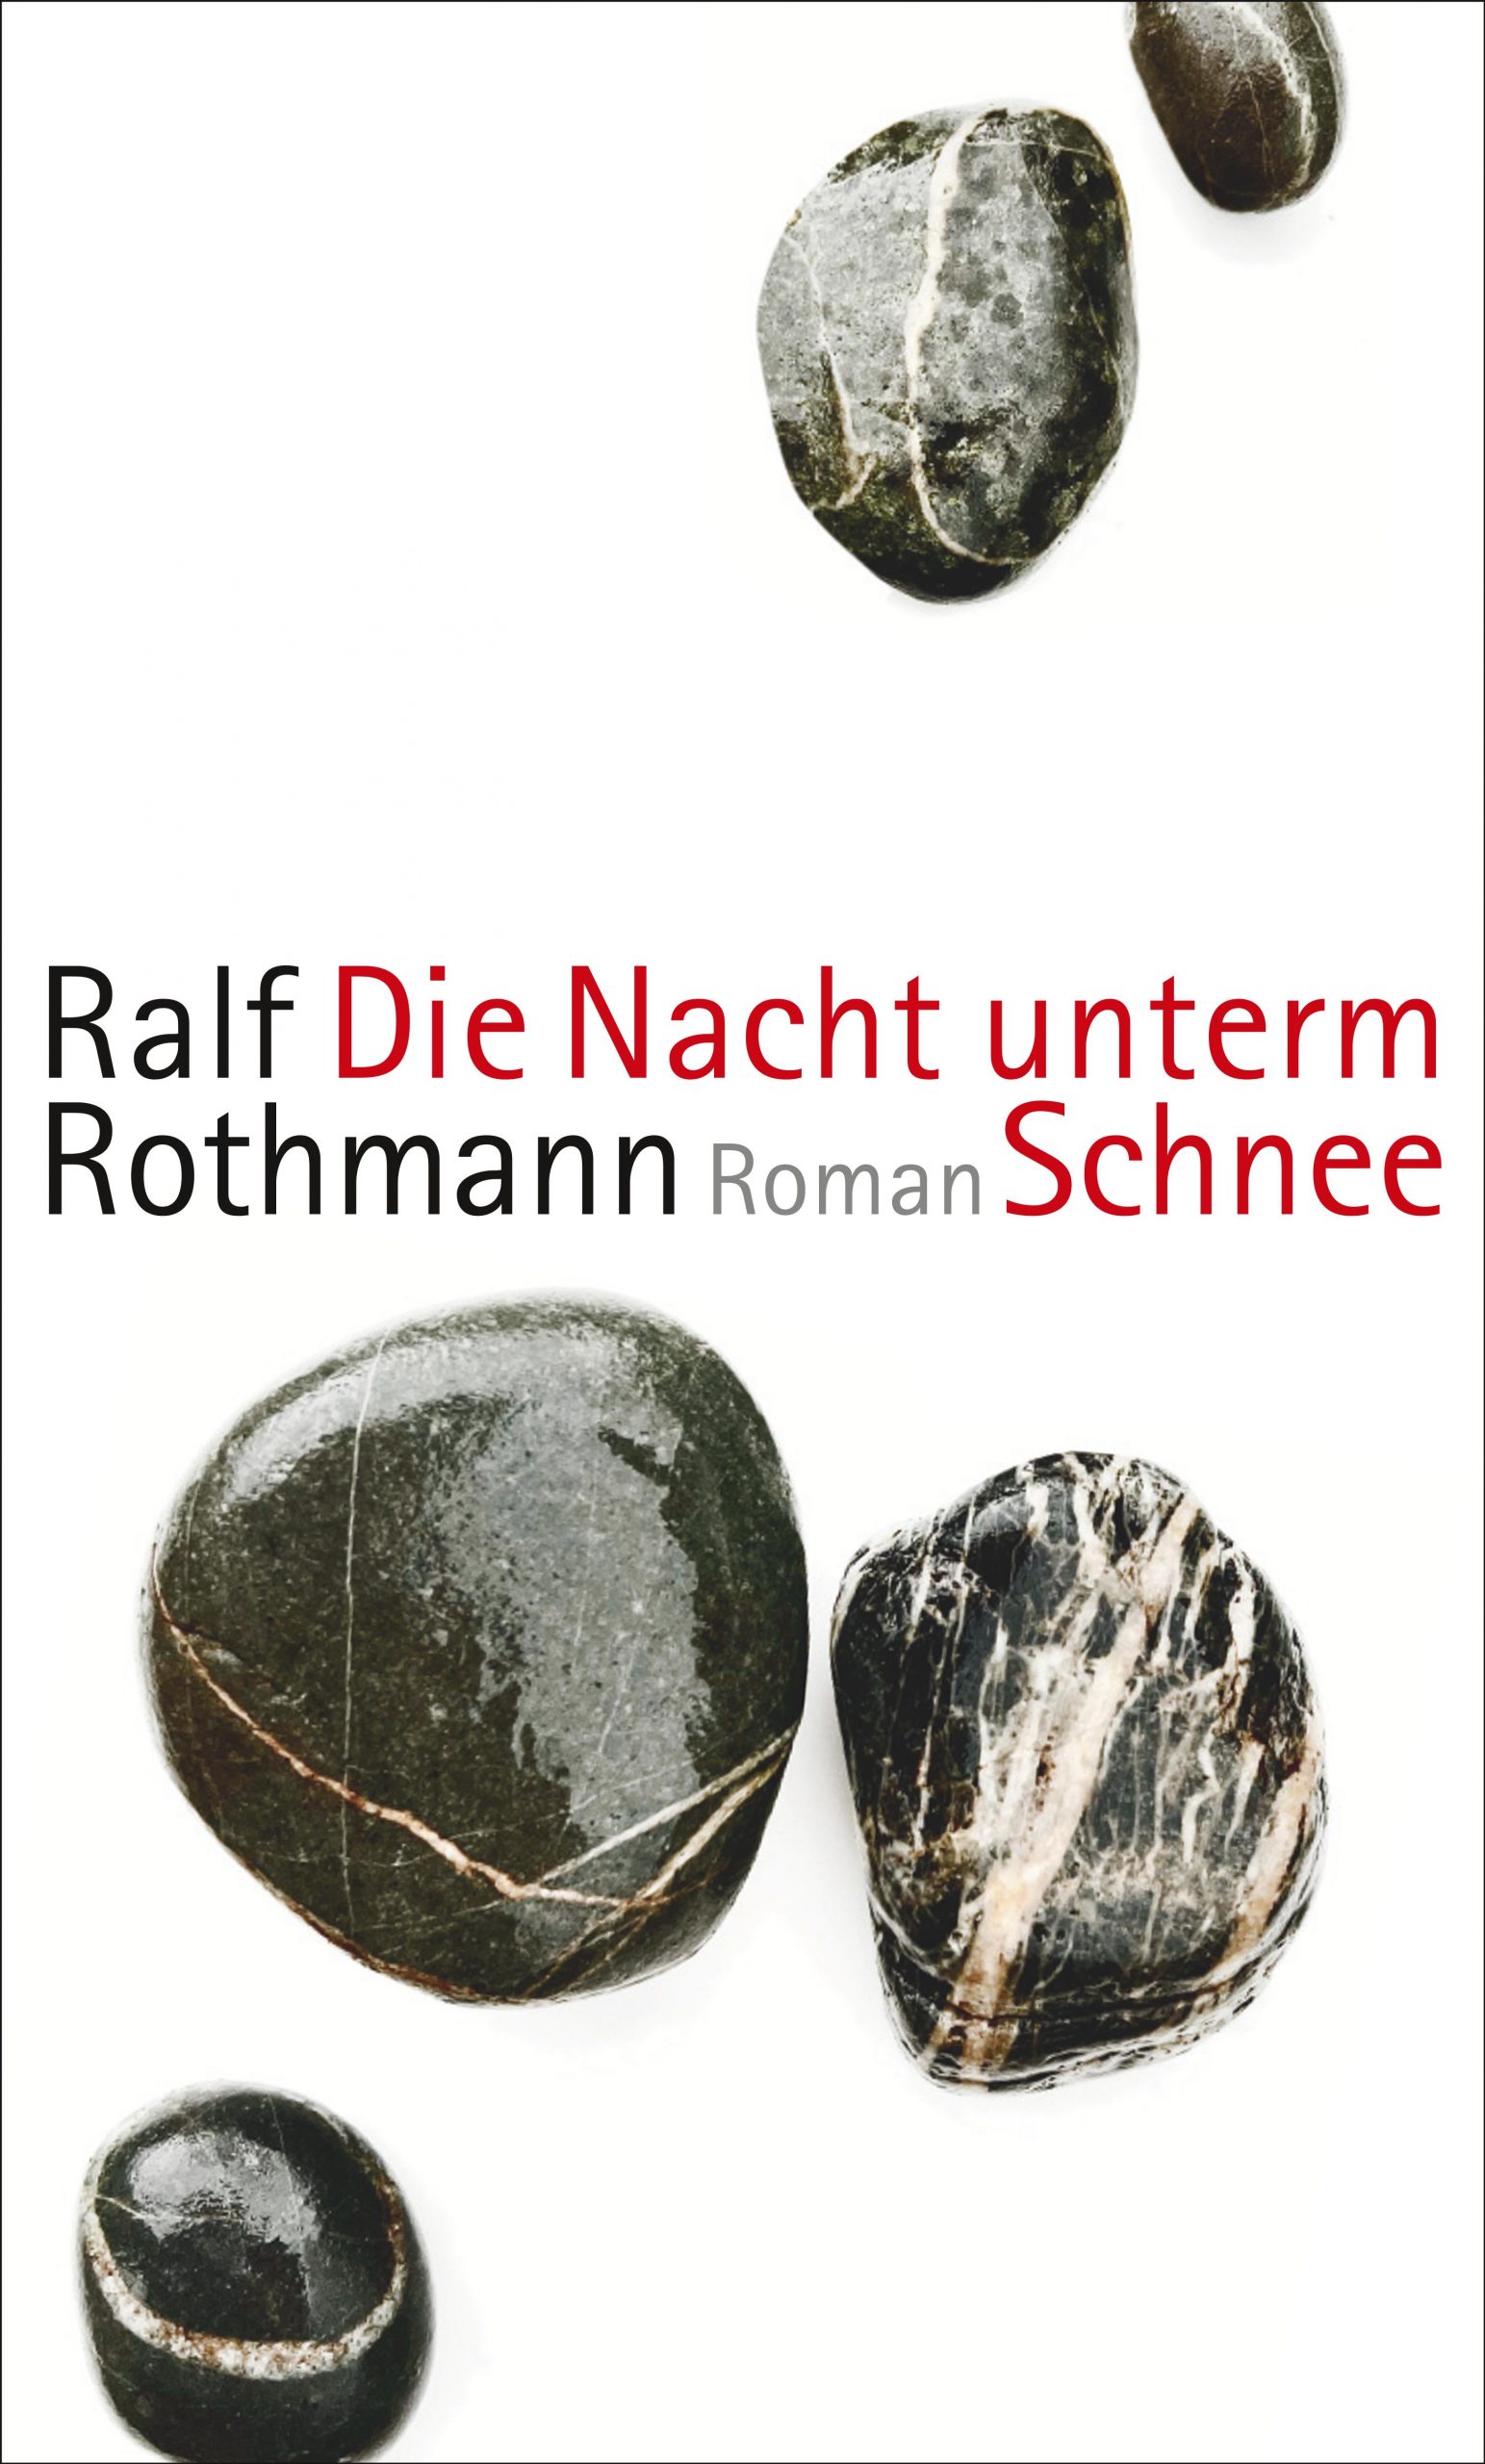 Buchcover-Ralf-Rothmann-Die Nacht-unterm-Schnee-Journalismus-Pfundtner